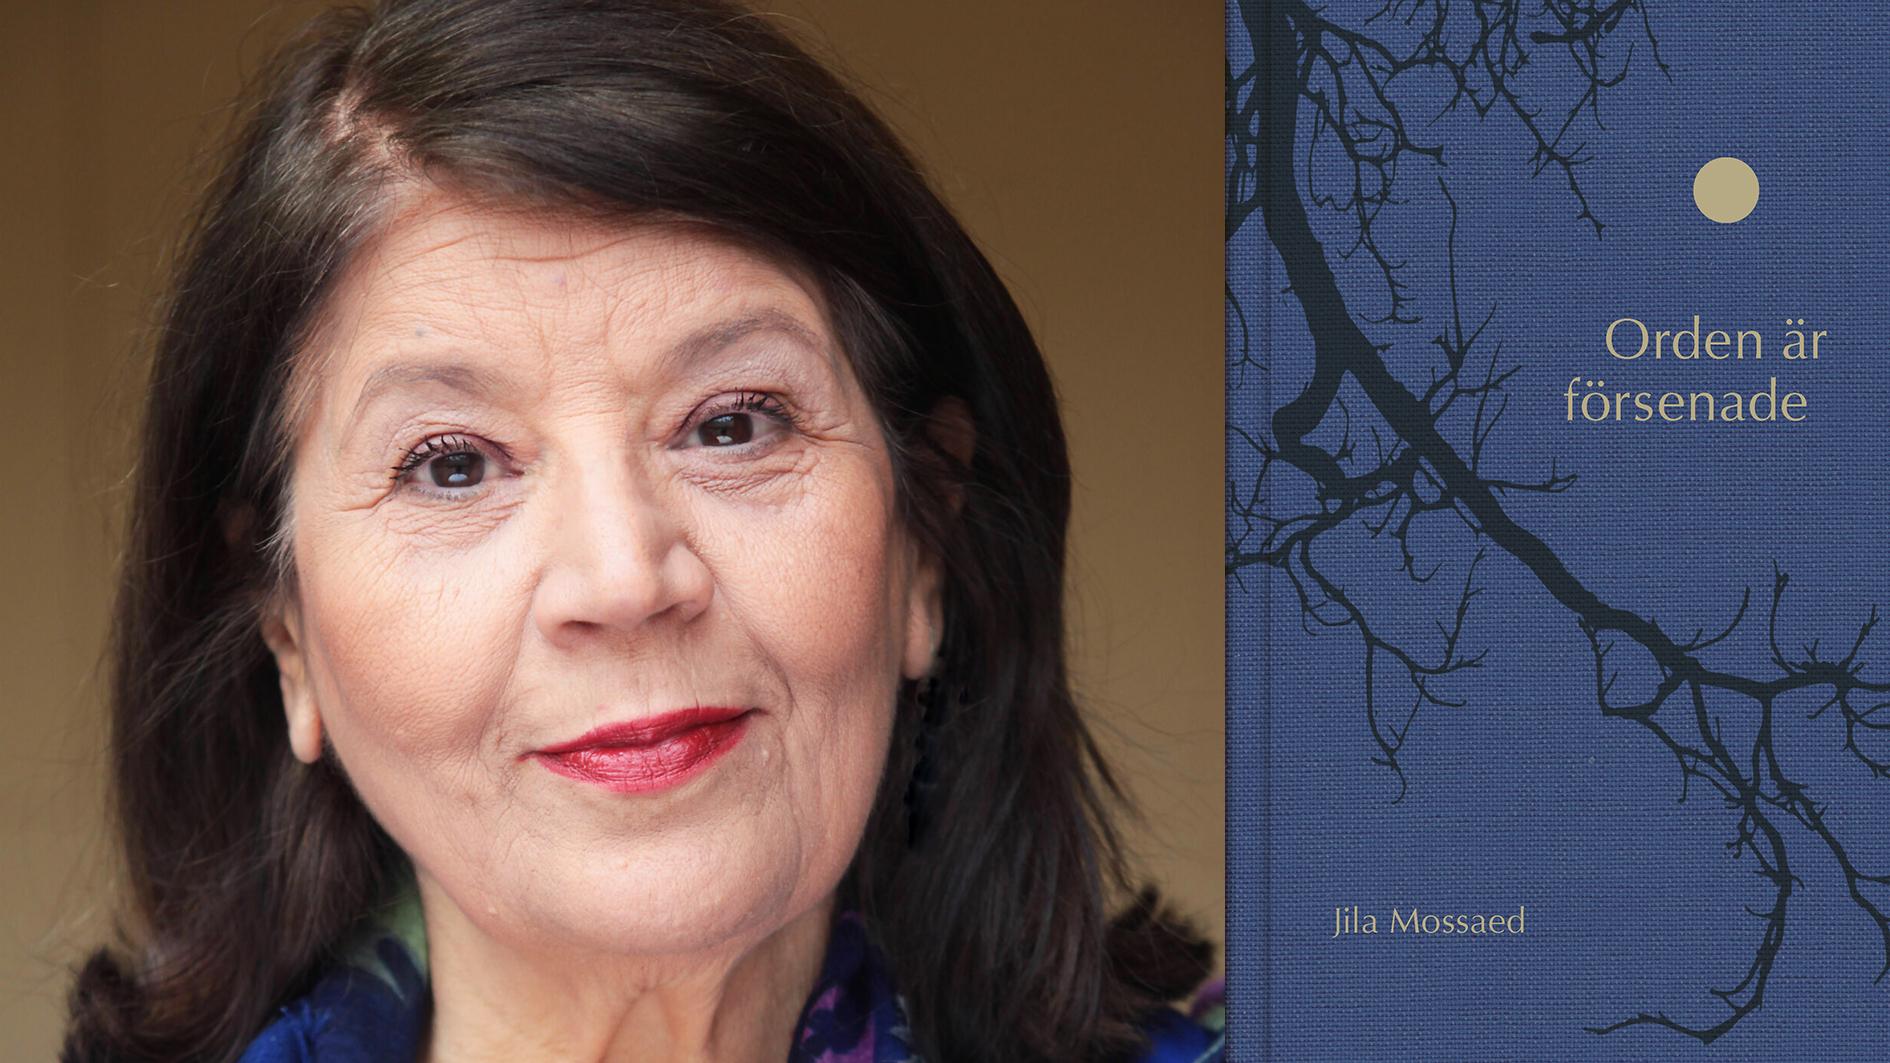 Jila Mossaed (född 1948 i Teheran) är sedan 1986 bosatt i Sverige och har givit ut ett flertal diktsamlingar på både svenska och persiska. Jila Mossaed har fått flera utmärkelser, bland annat Aftonbladets litteraturpris (2015). Hon är ledamot i Svenska Akademien.